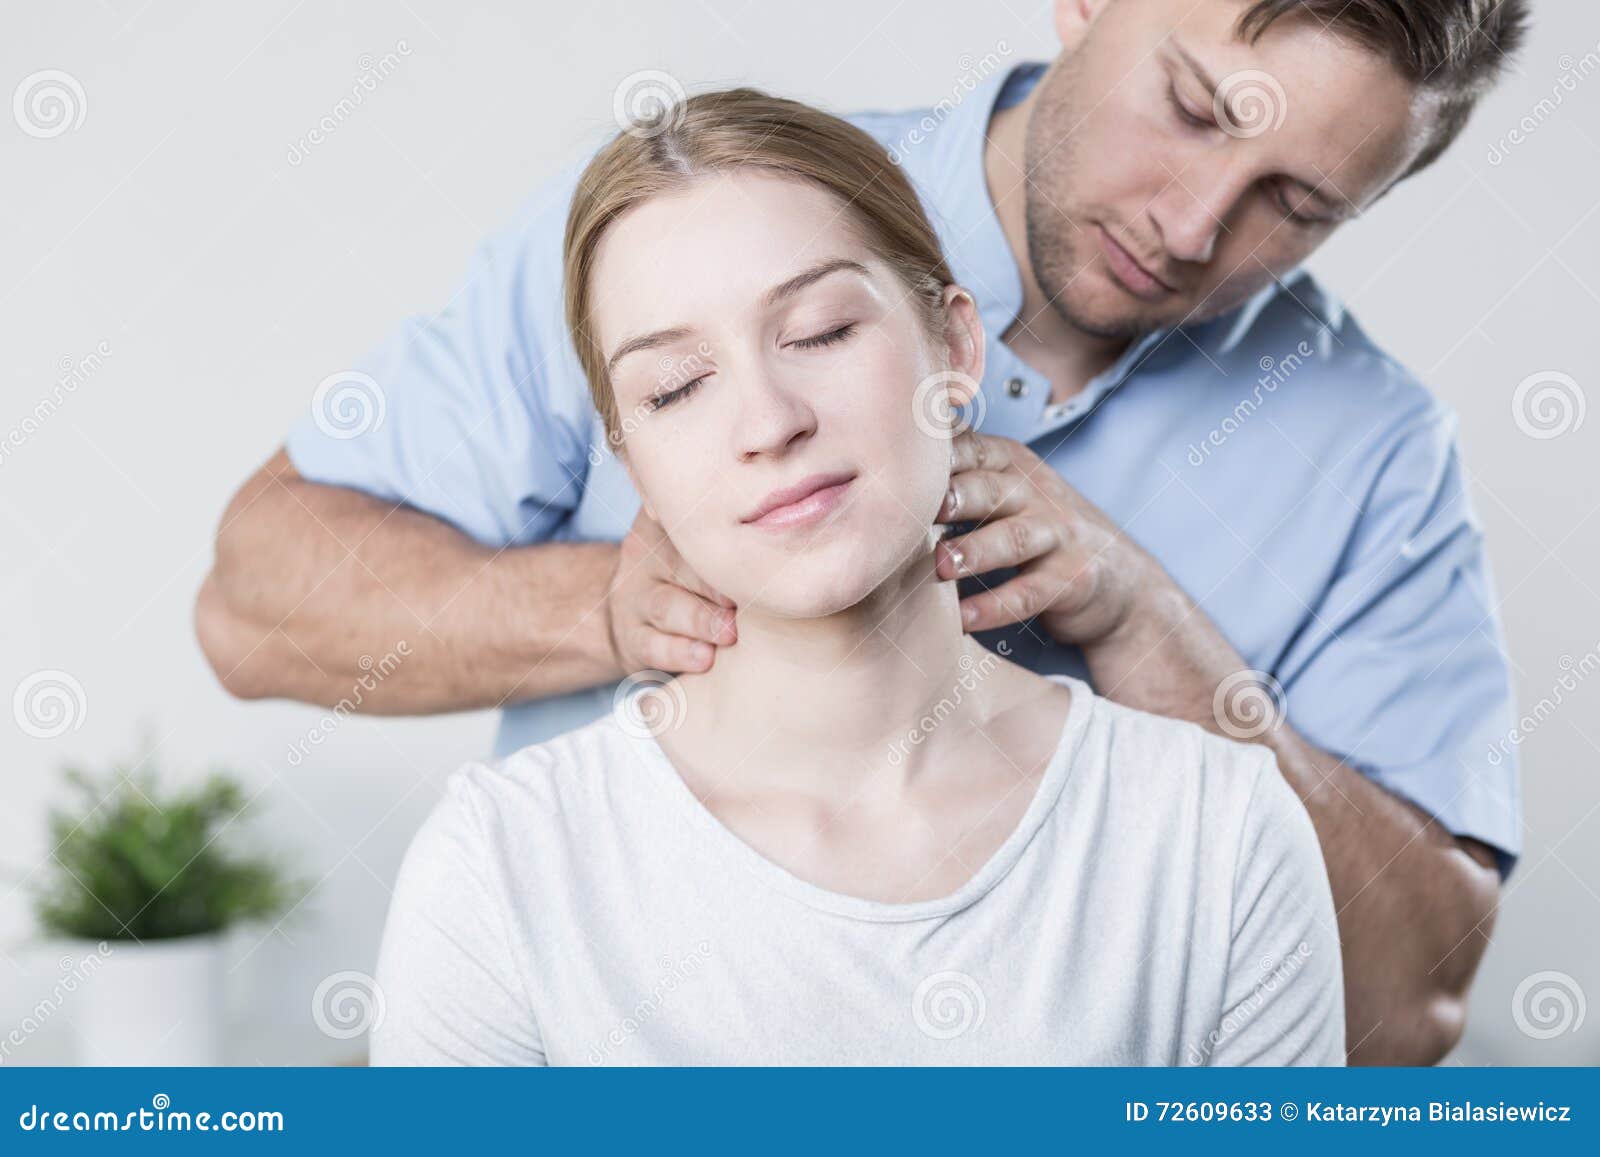 cervical spine massage